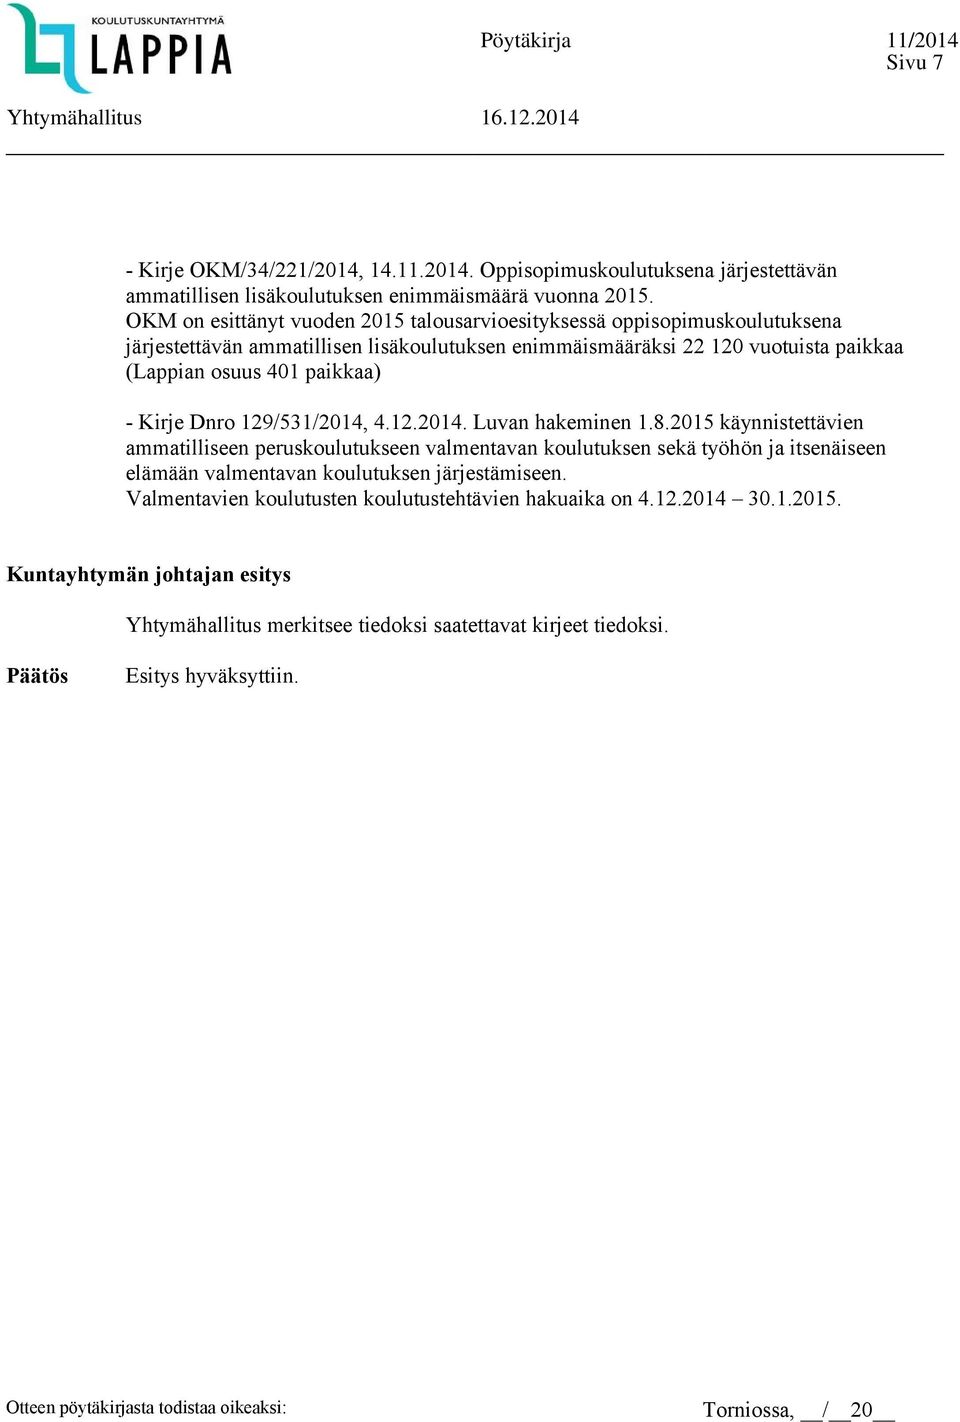 paikkaa) - Kirje Dnro 129/531/2014, 4.12.2014. Luvan hakeminen 1.8.